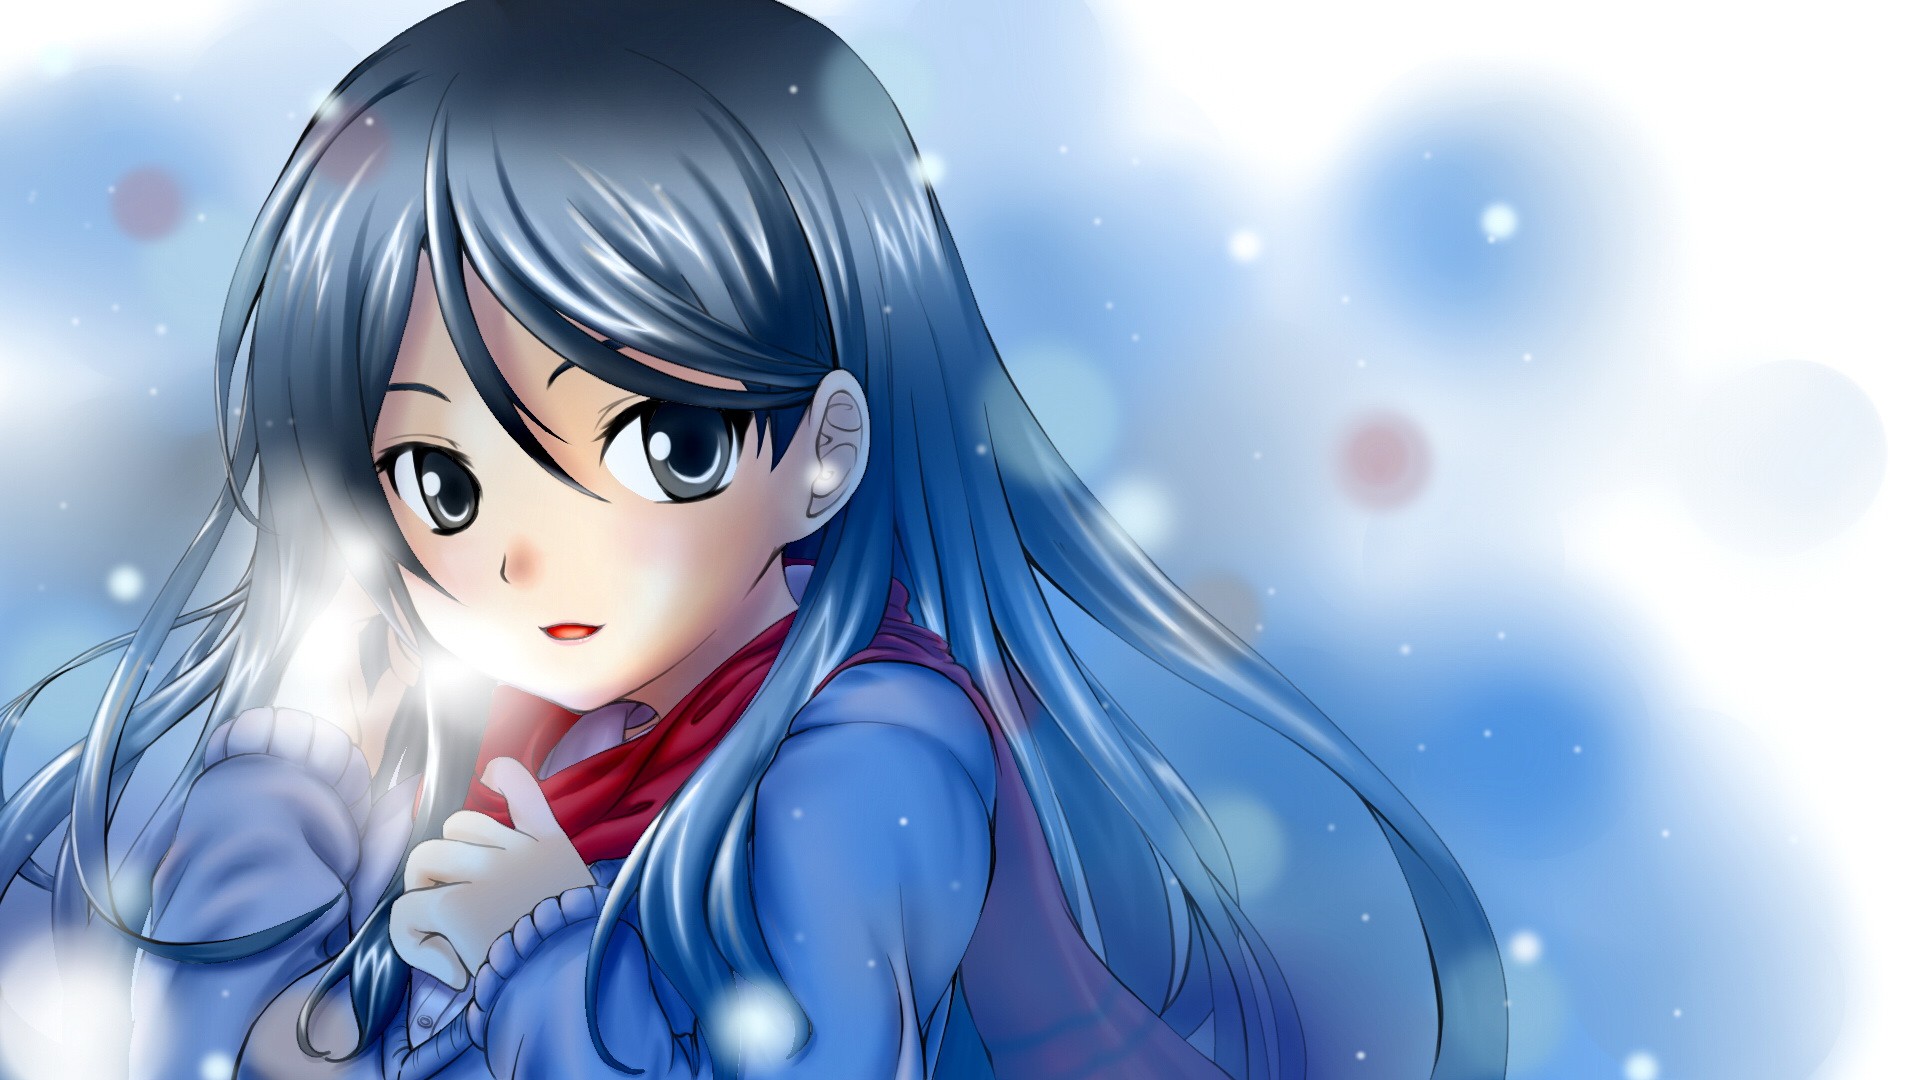 Anime Mùa đông, cô gái Anime, Mở miệng, Tóc dài, Tuyết, Lạnh, Mắt là hình nền đầy cảm hứng và nghệ thuật. Với tông màu trắng xanh lạnh và cá tính của cô gái Anime, bức hình nền sẽ đưa bạn đến một vùng đất giá lạnh, nơi tuyết rơi và cô gái Anime đang tưởng nhớ. Hãy cùng khám phá bức tranh tuyệt đẹp này!